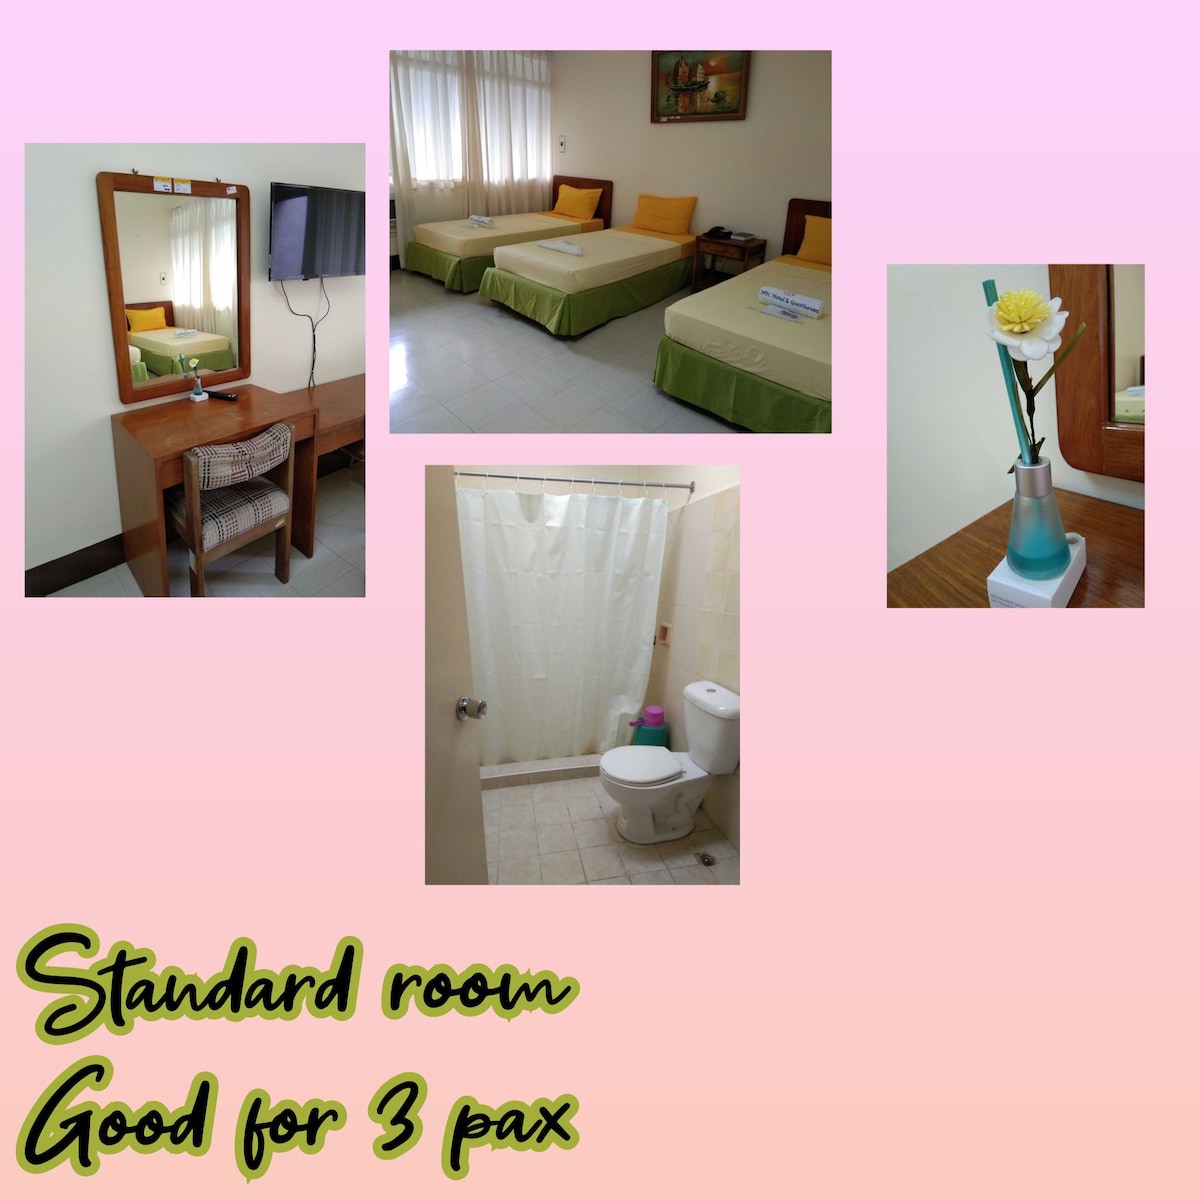 Standard room good for 3

Enjoy!